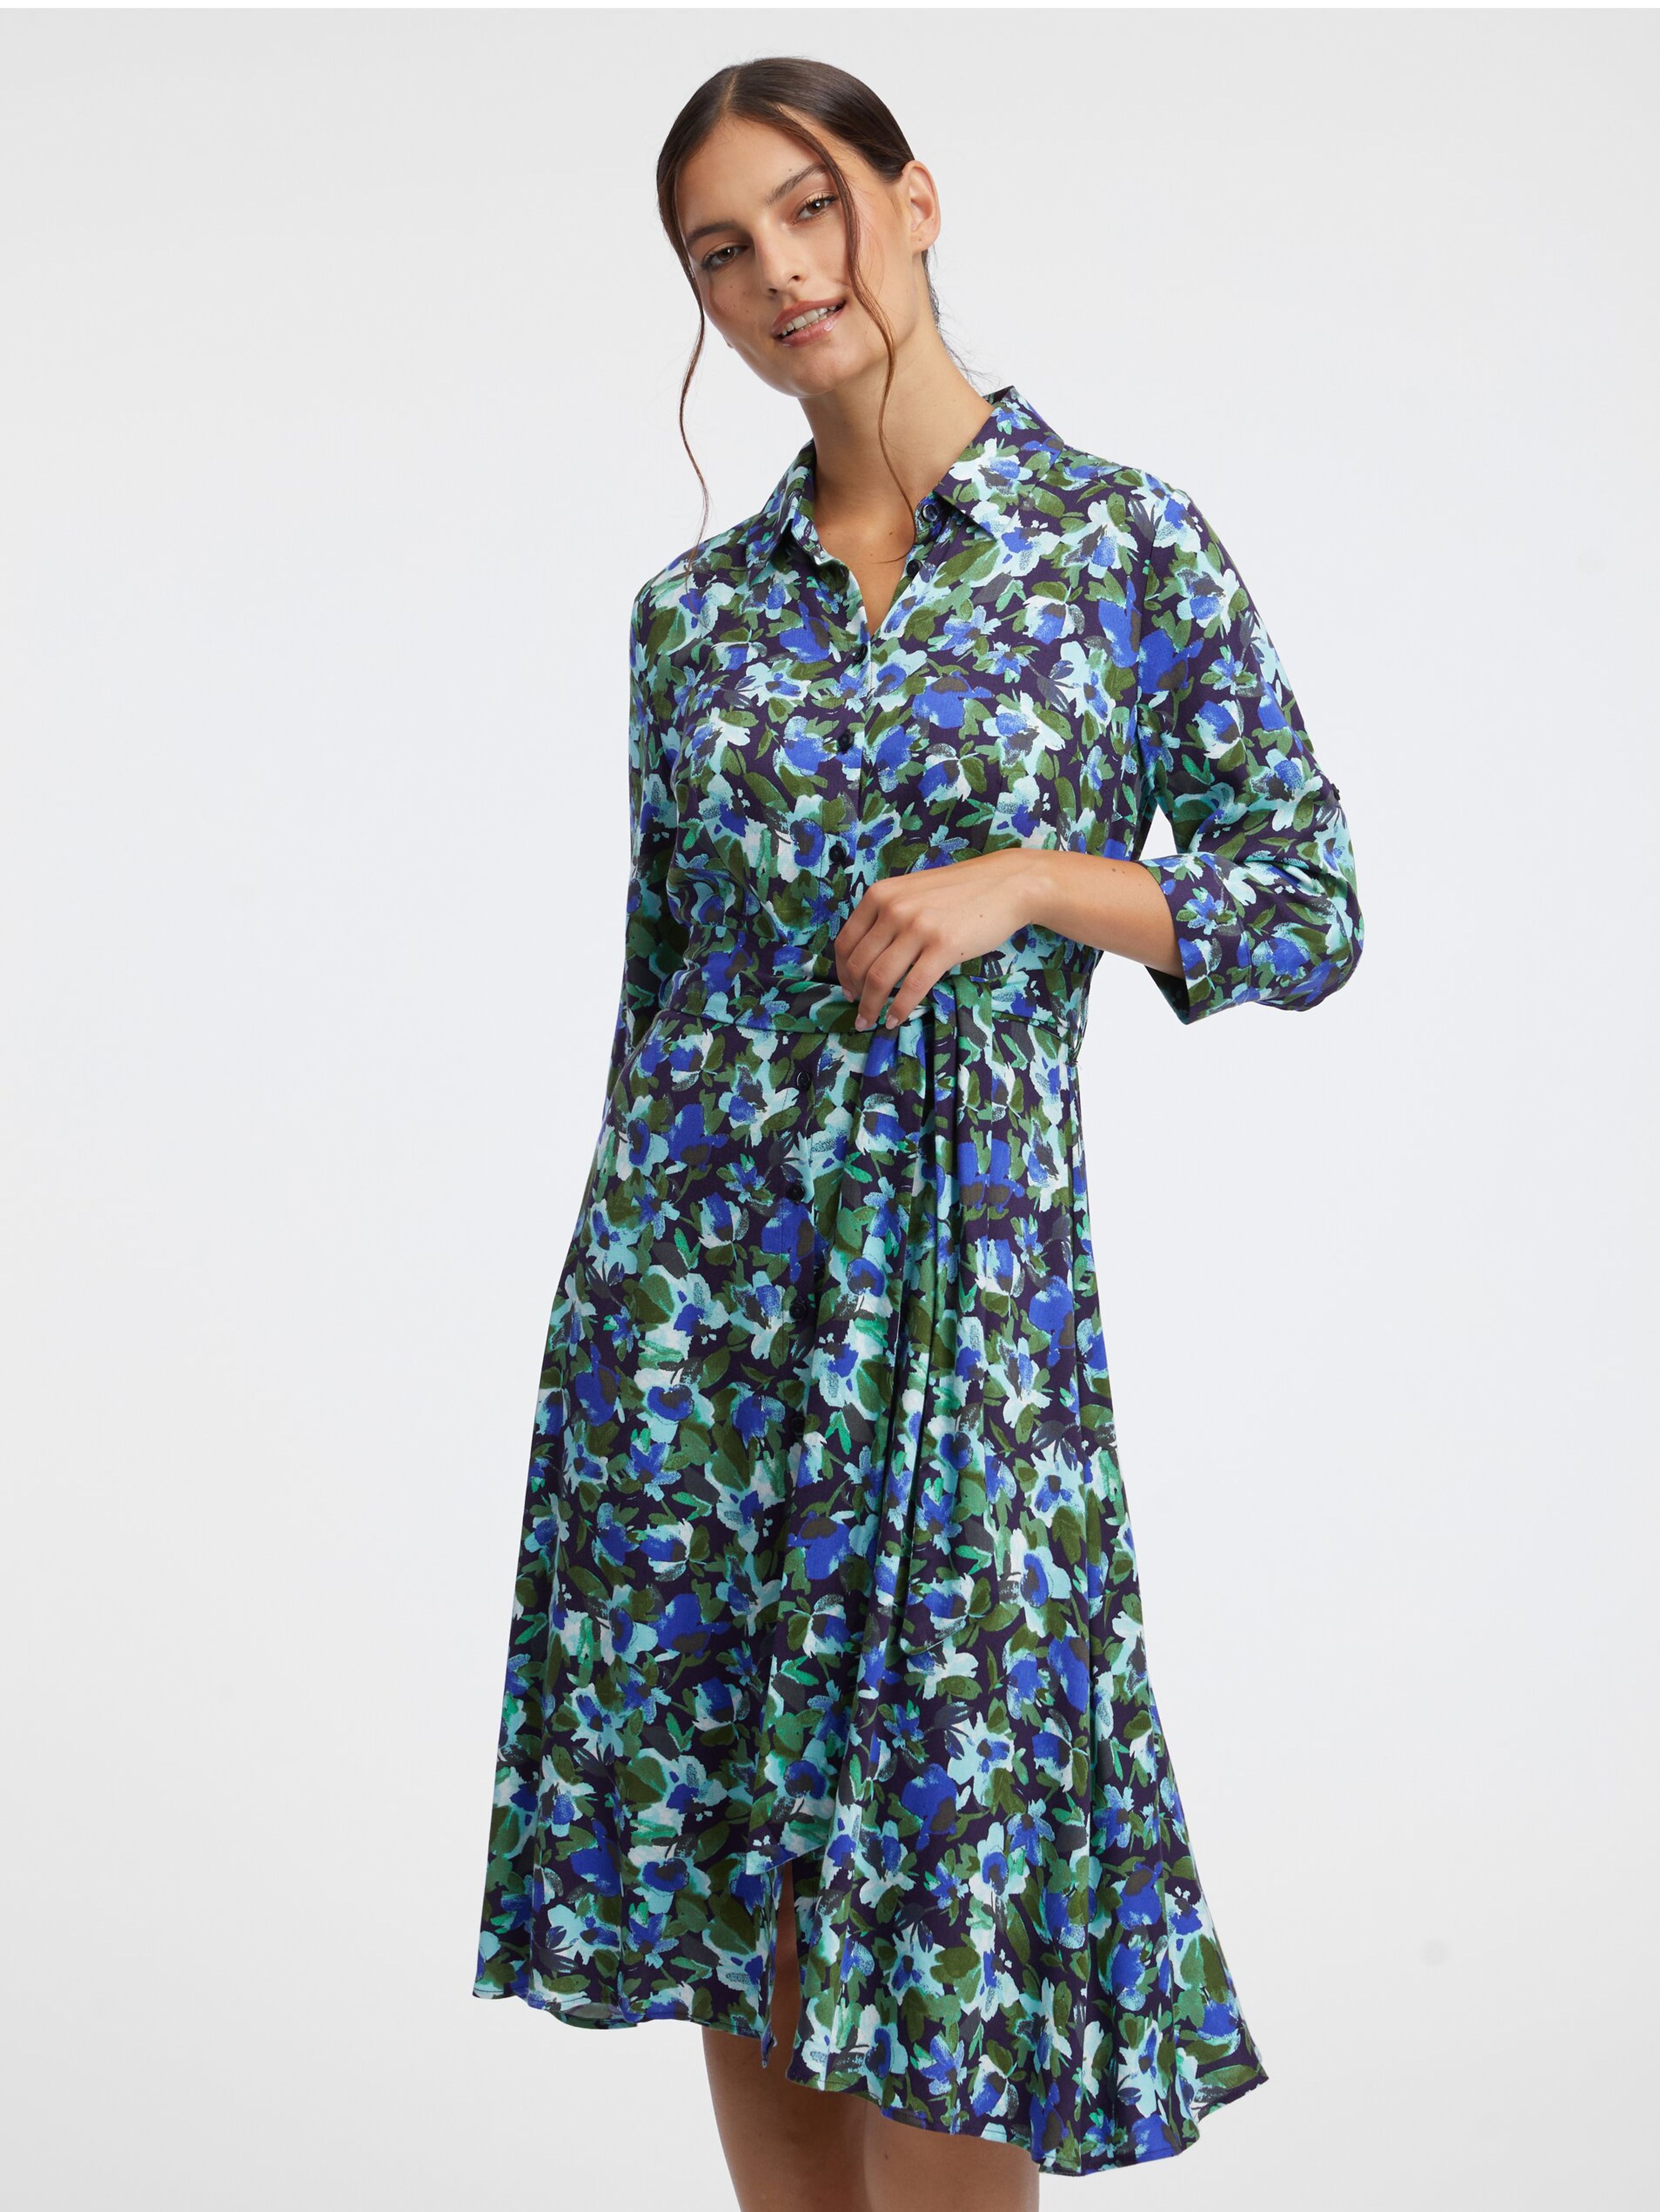 Zeleno-modré dámské květované košilové šaty ORSAY